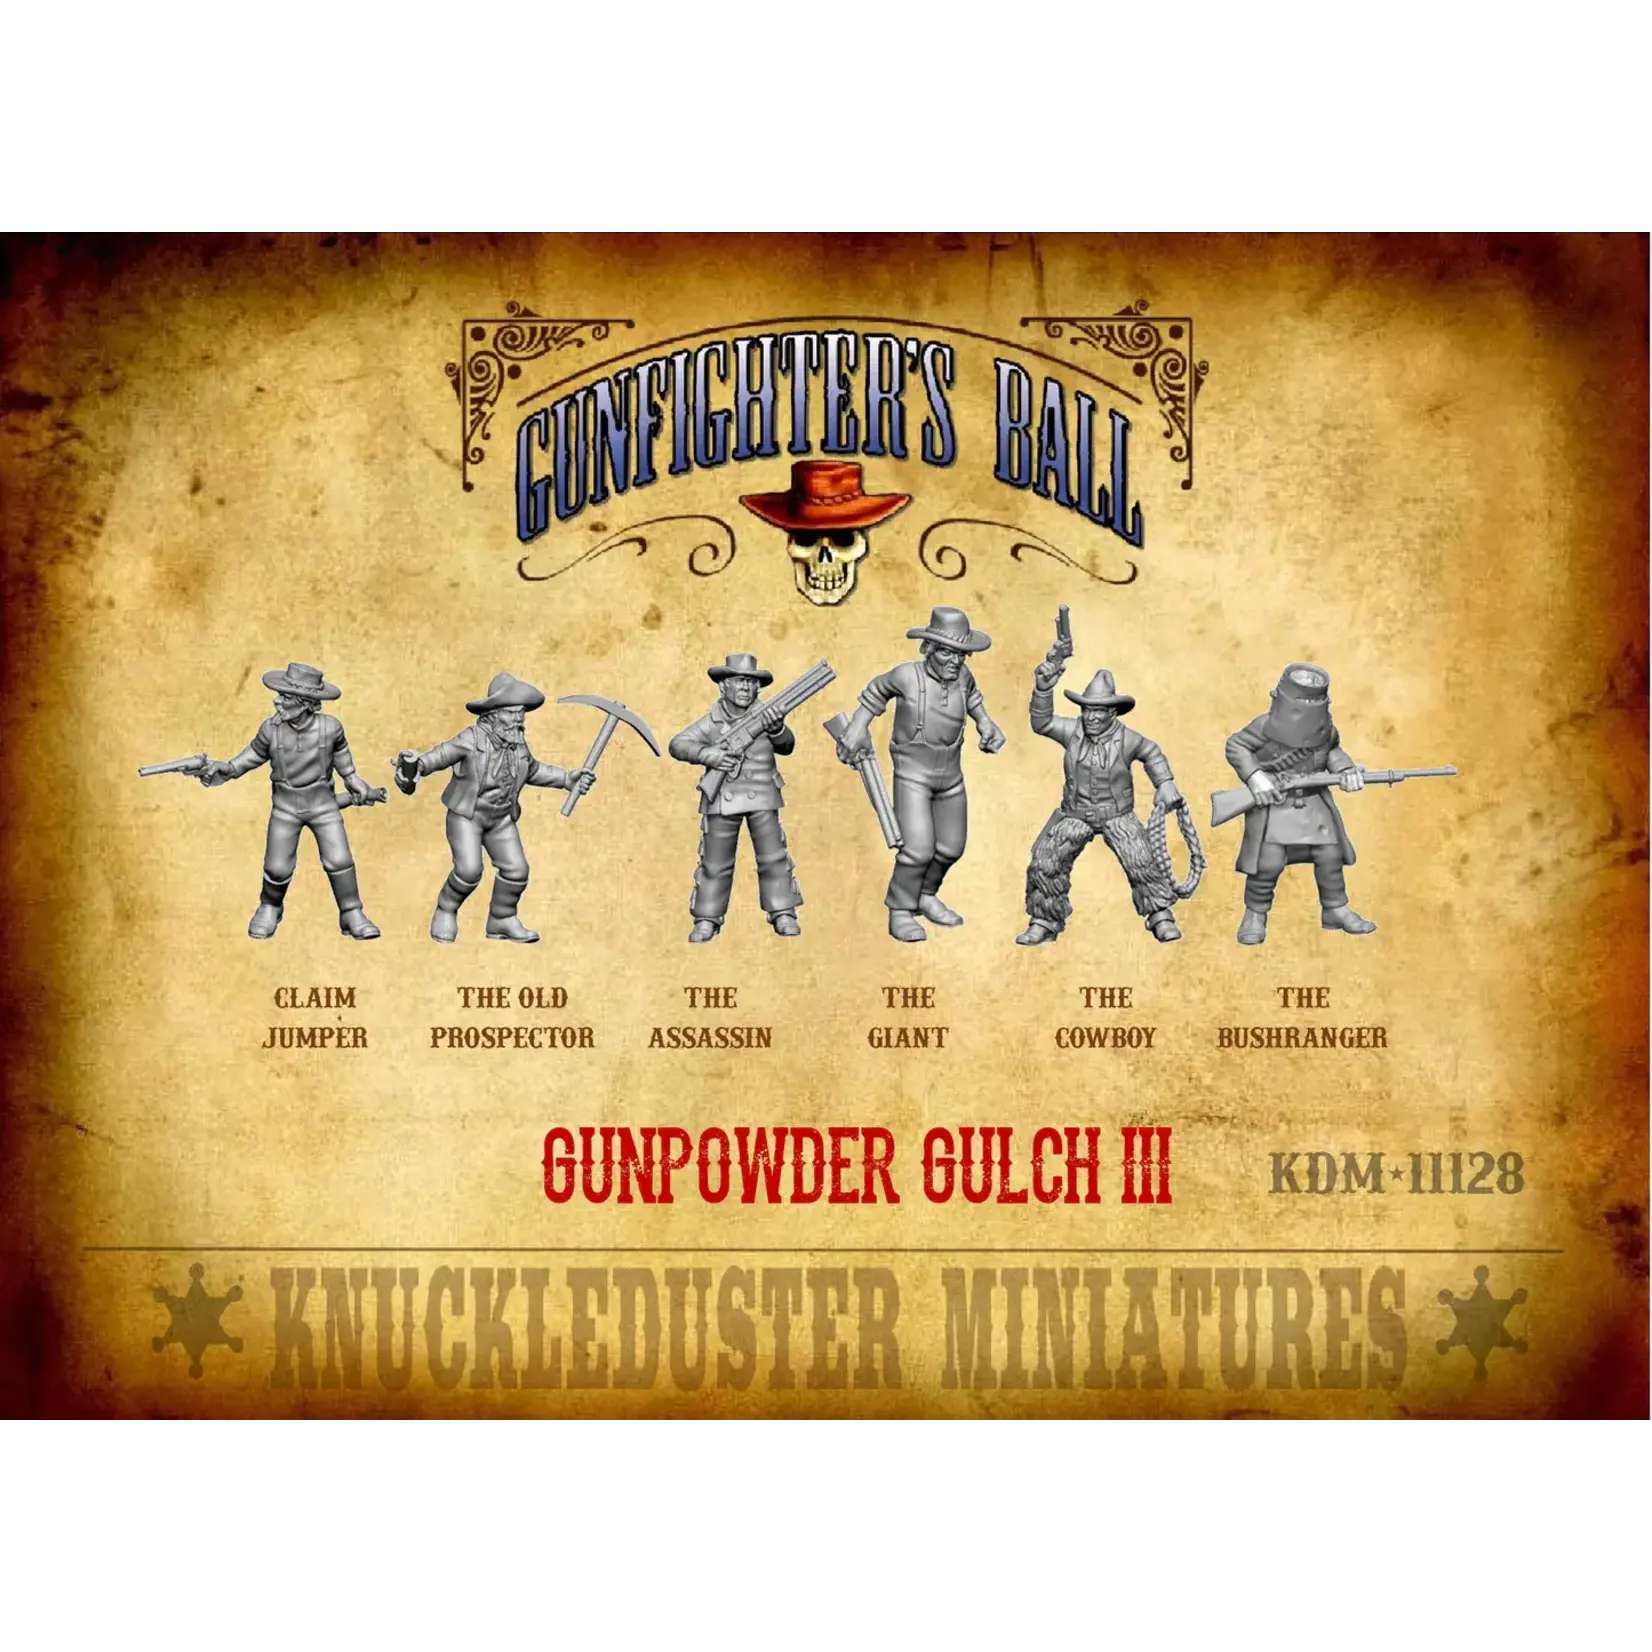 Knuckleduster Miniatures Gunpowder Gulch III